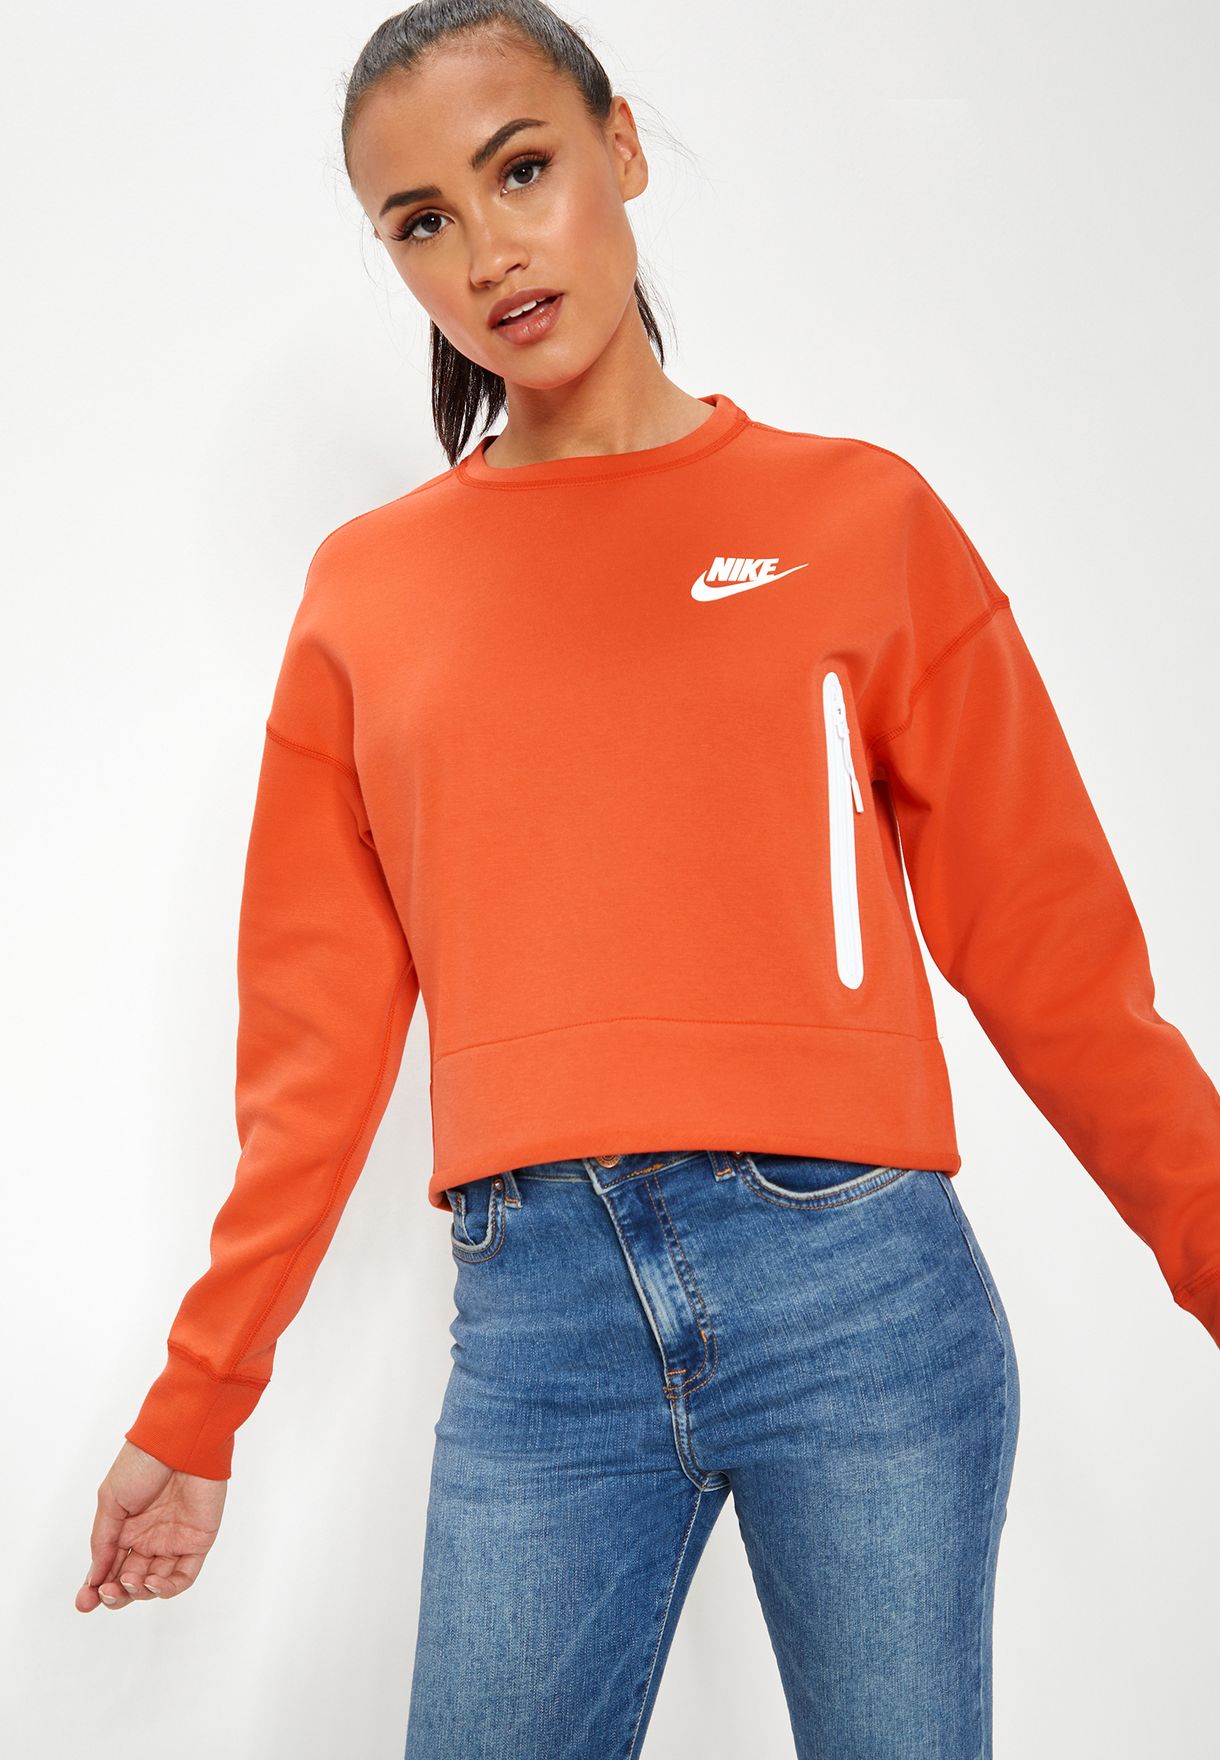 women's nike orange clothing